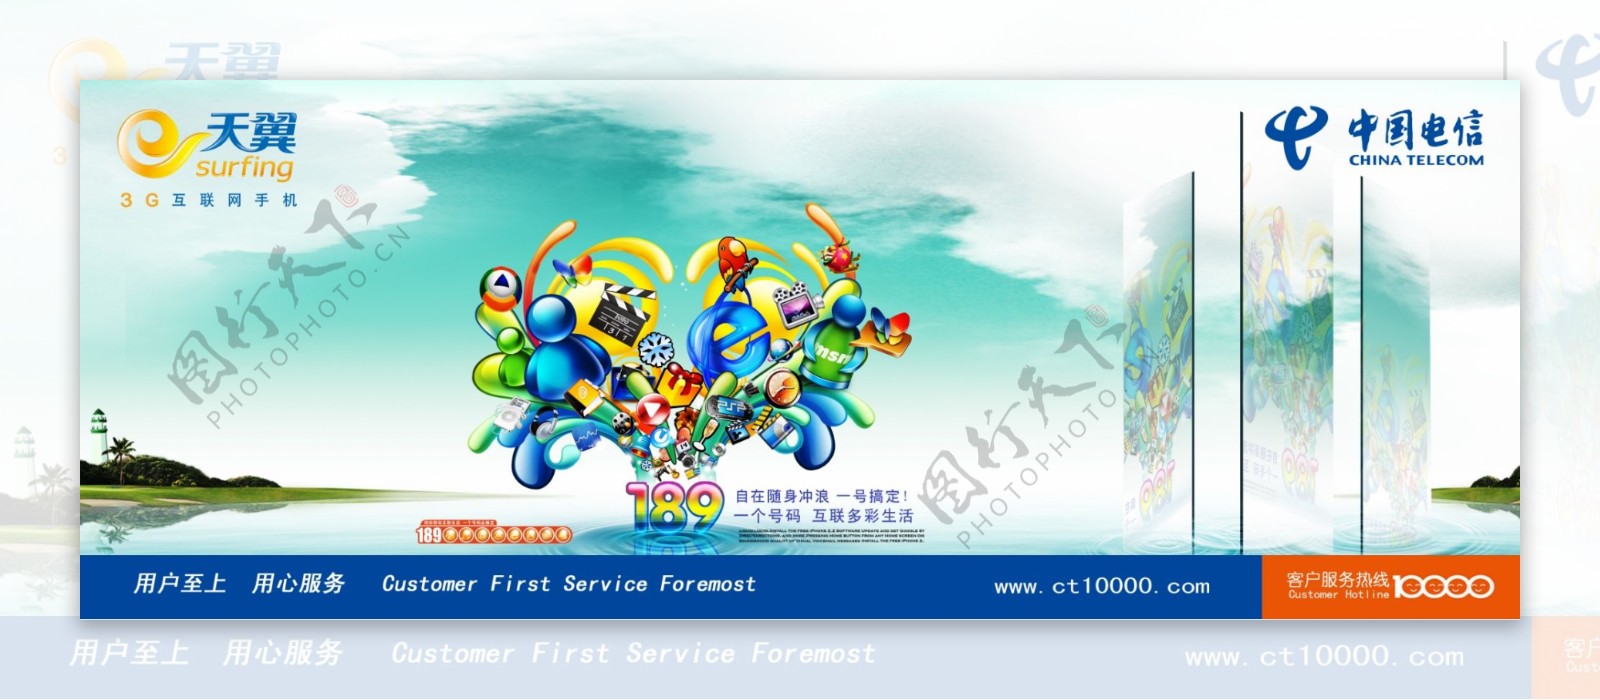 中国电信天翼189创意广告图片